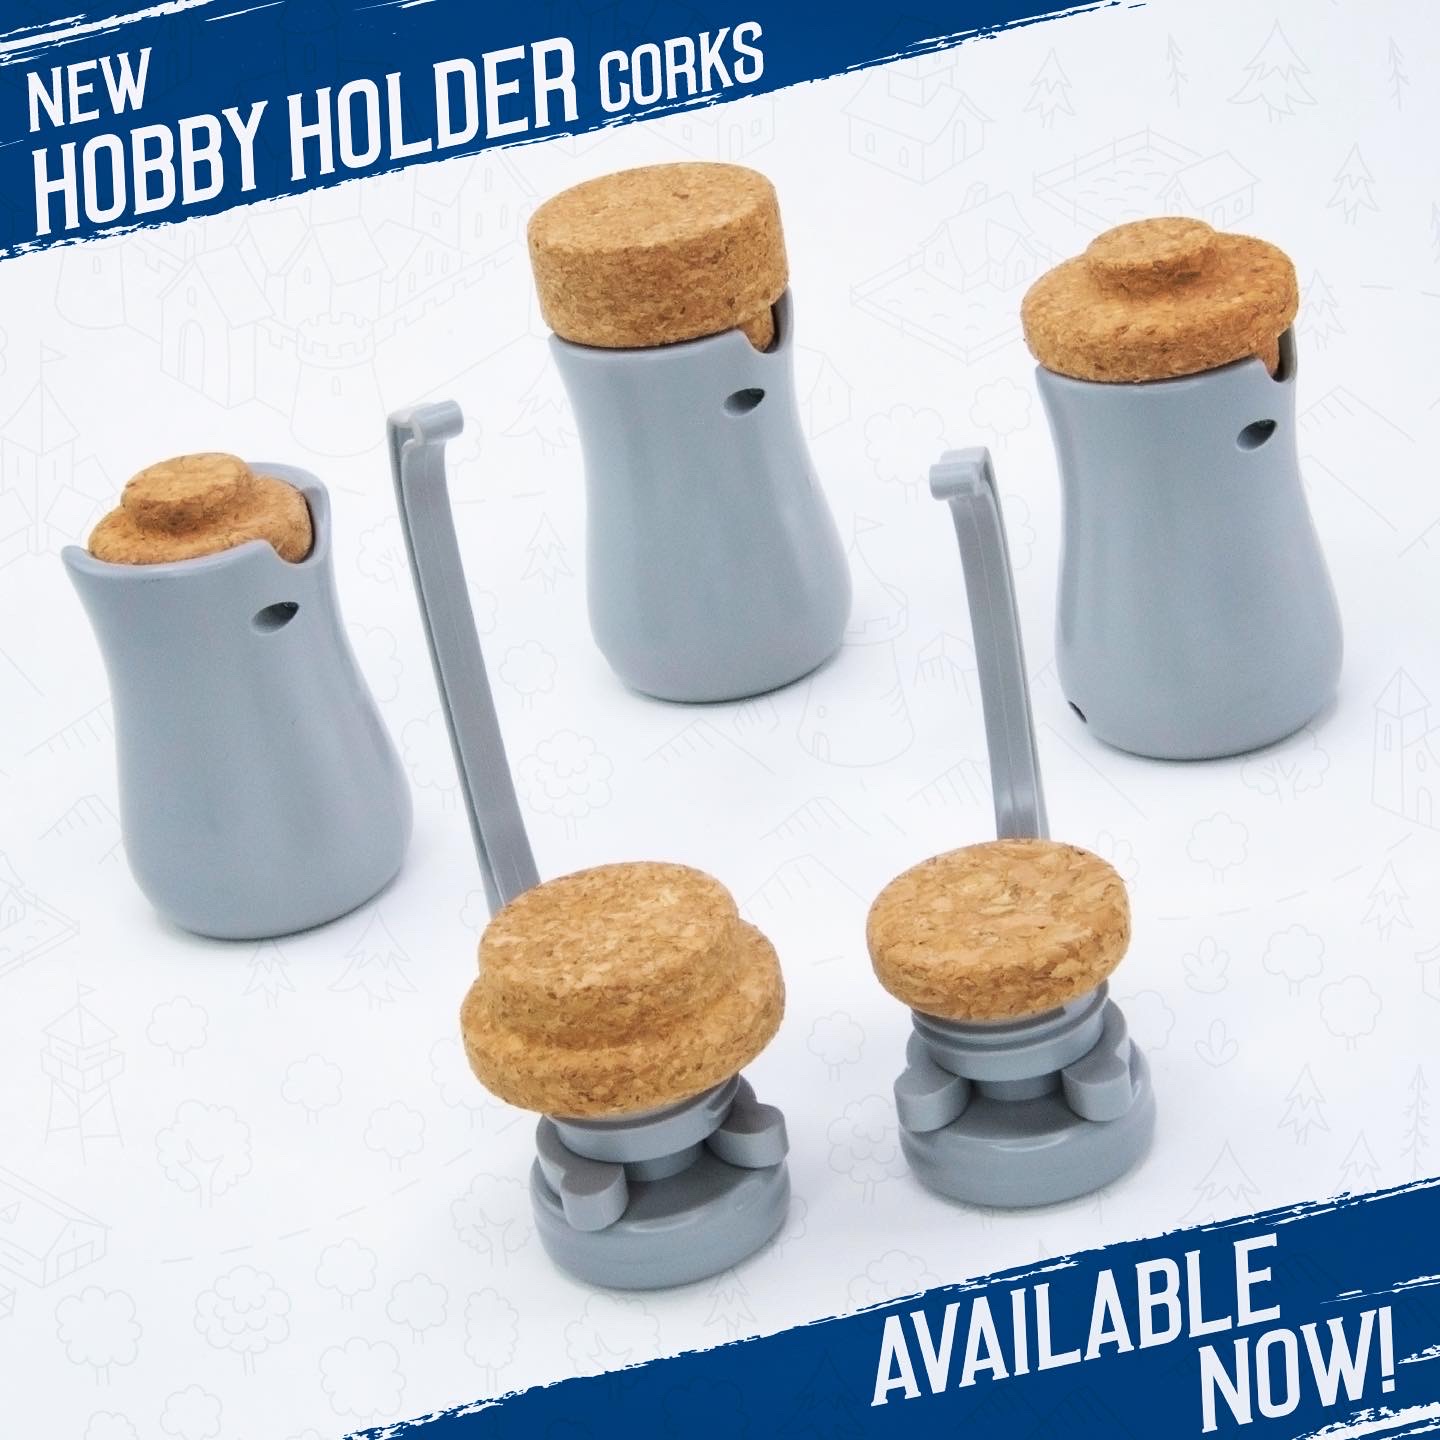 The Hobby Holder Custom Corks